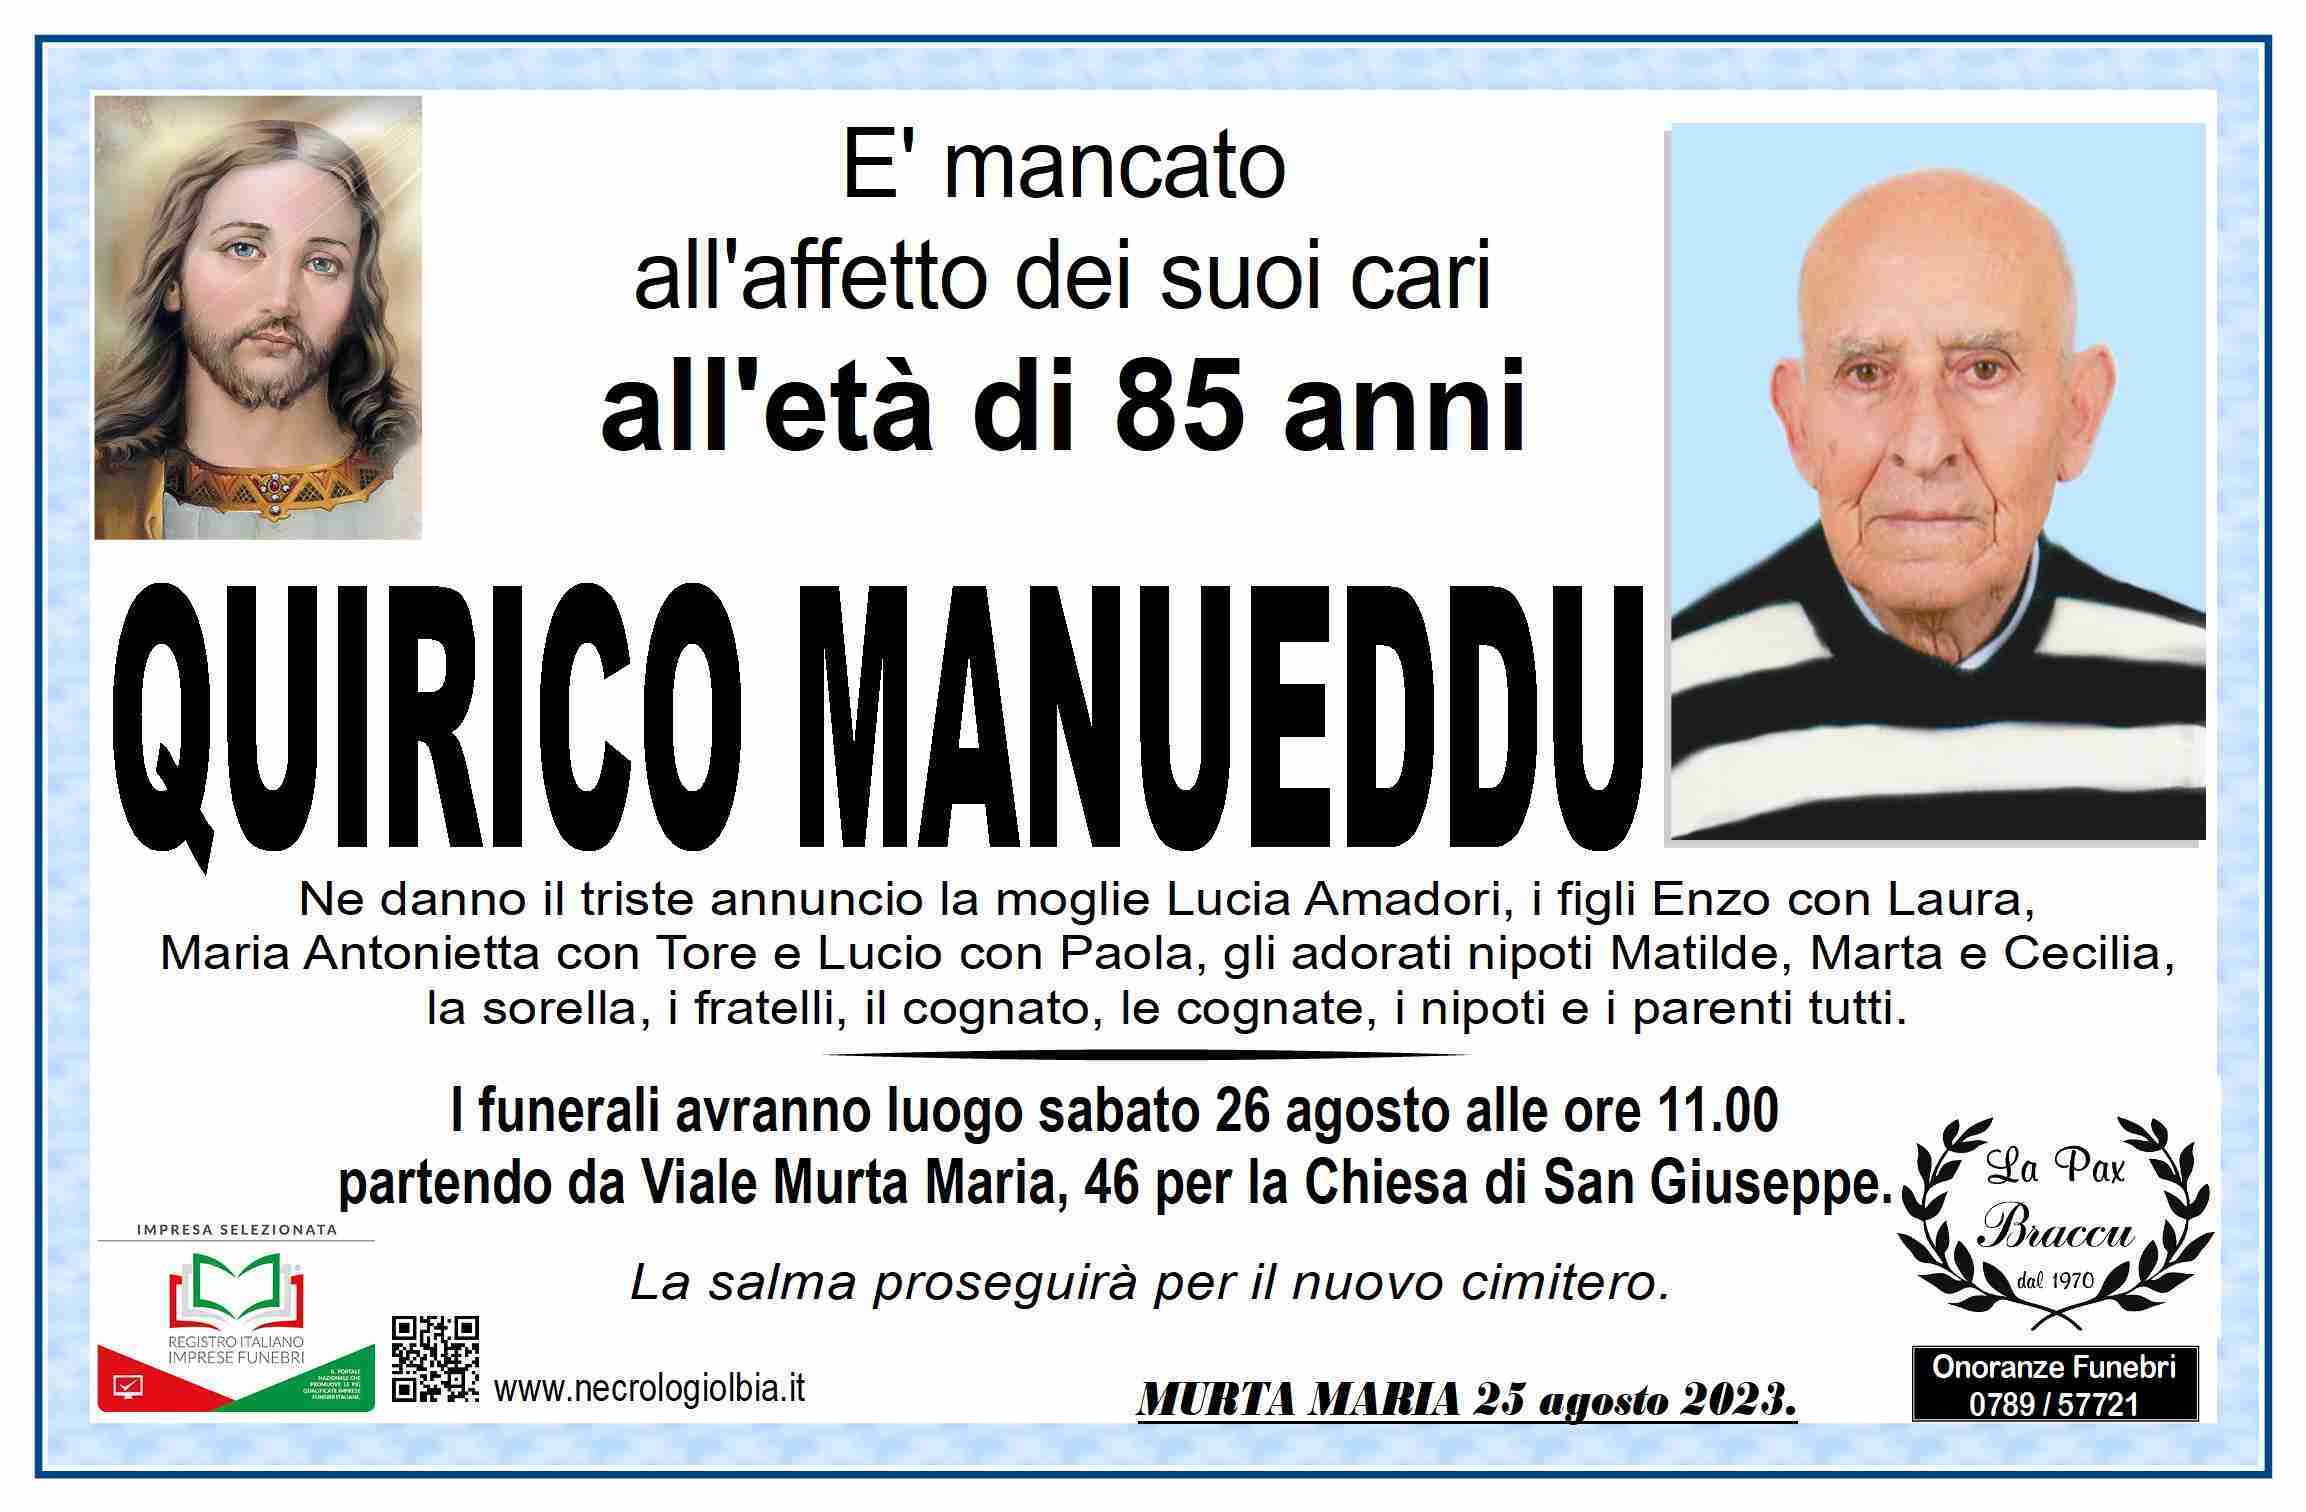 Quirico Manueddu